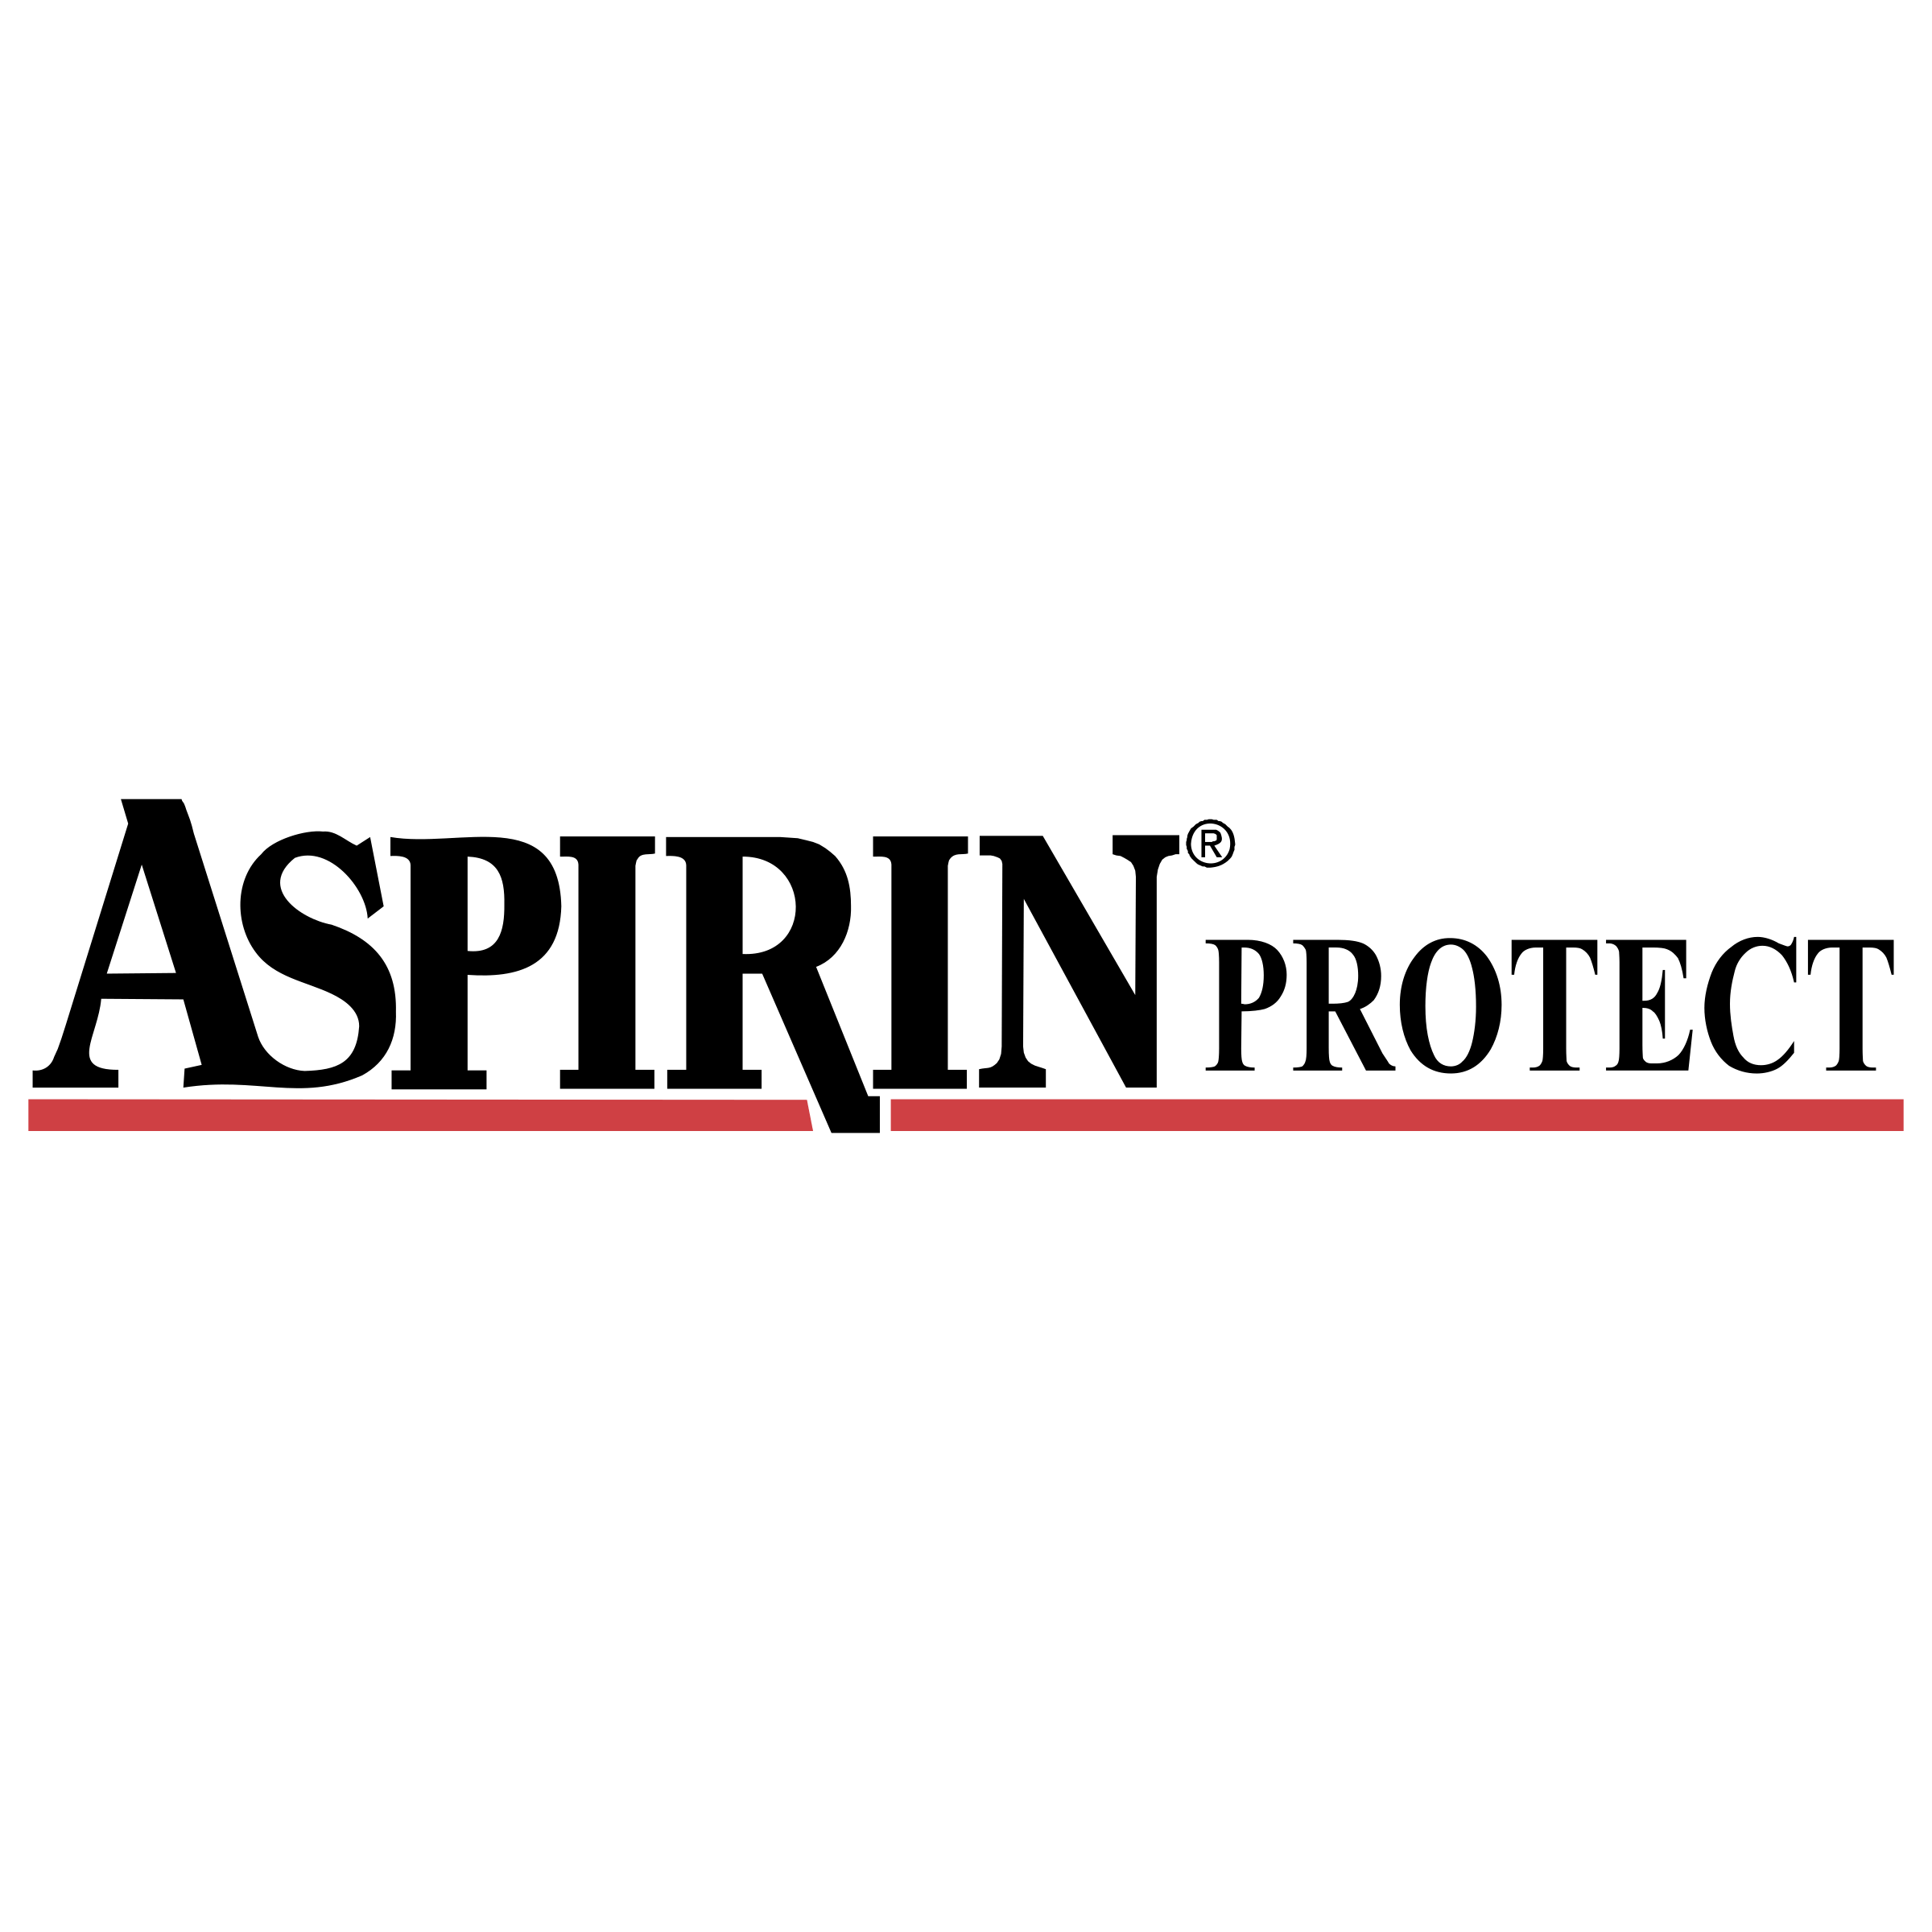 Aspirin Logo - Aspirin Protect 01 Logo PNG Transparent & SVG Vector